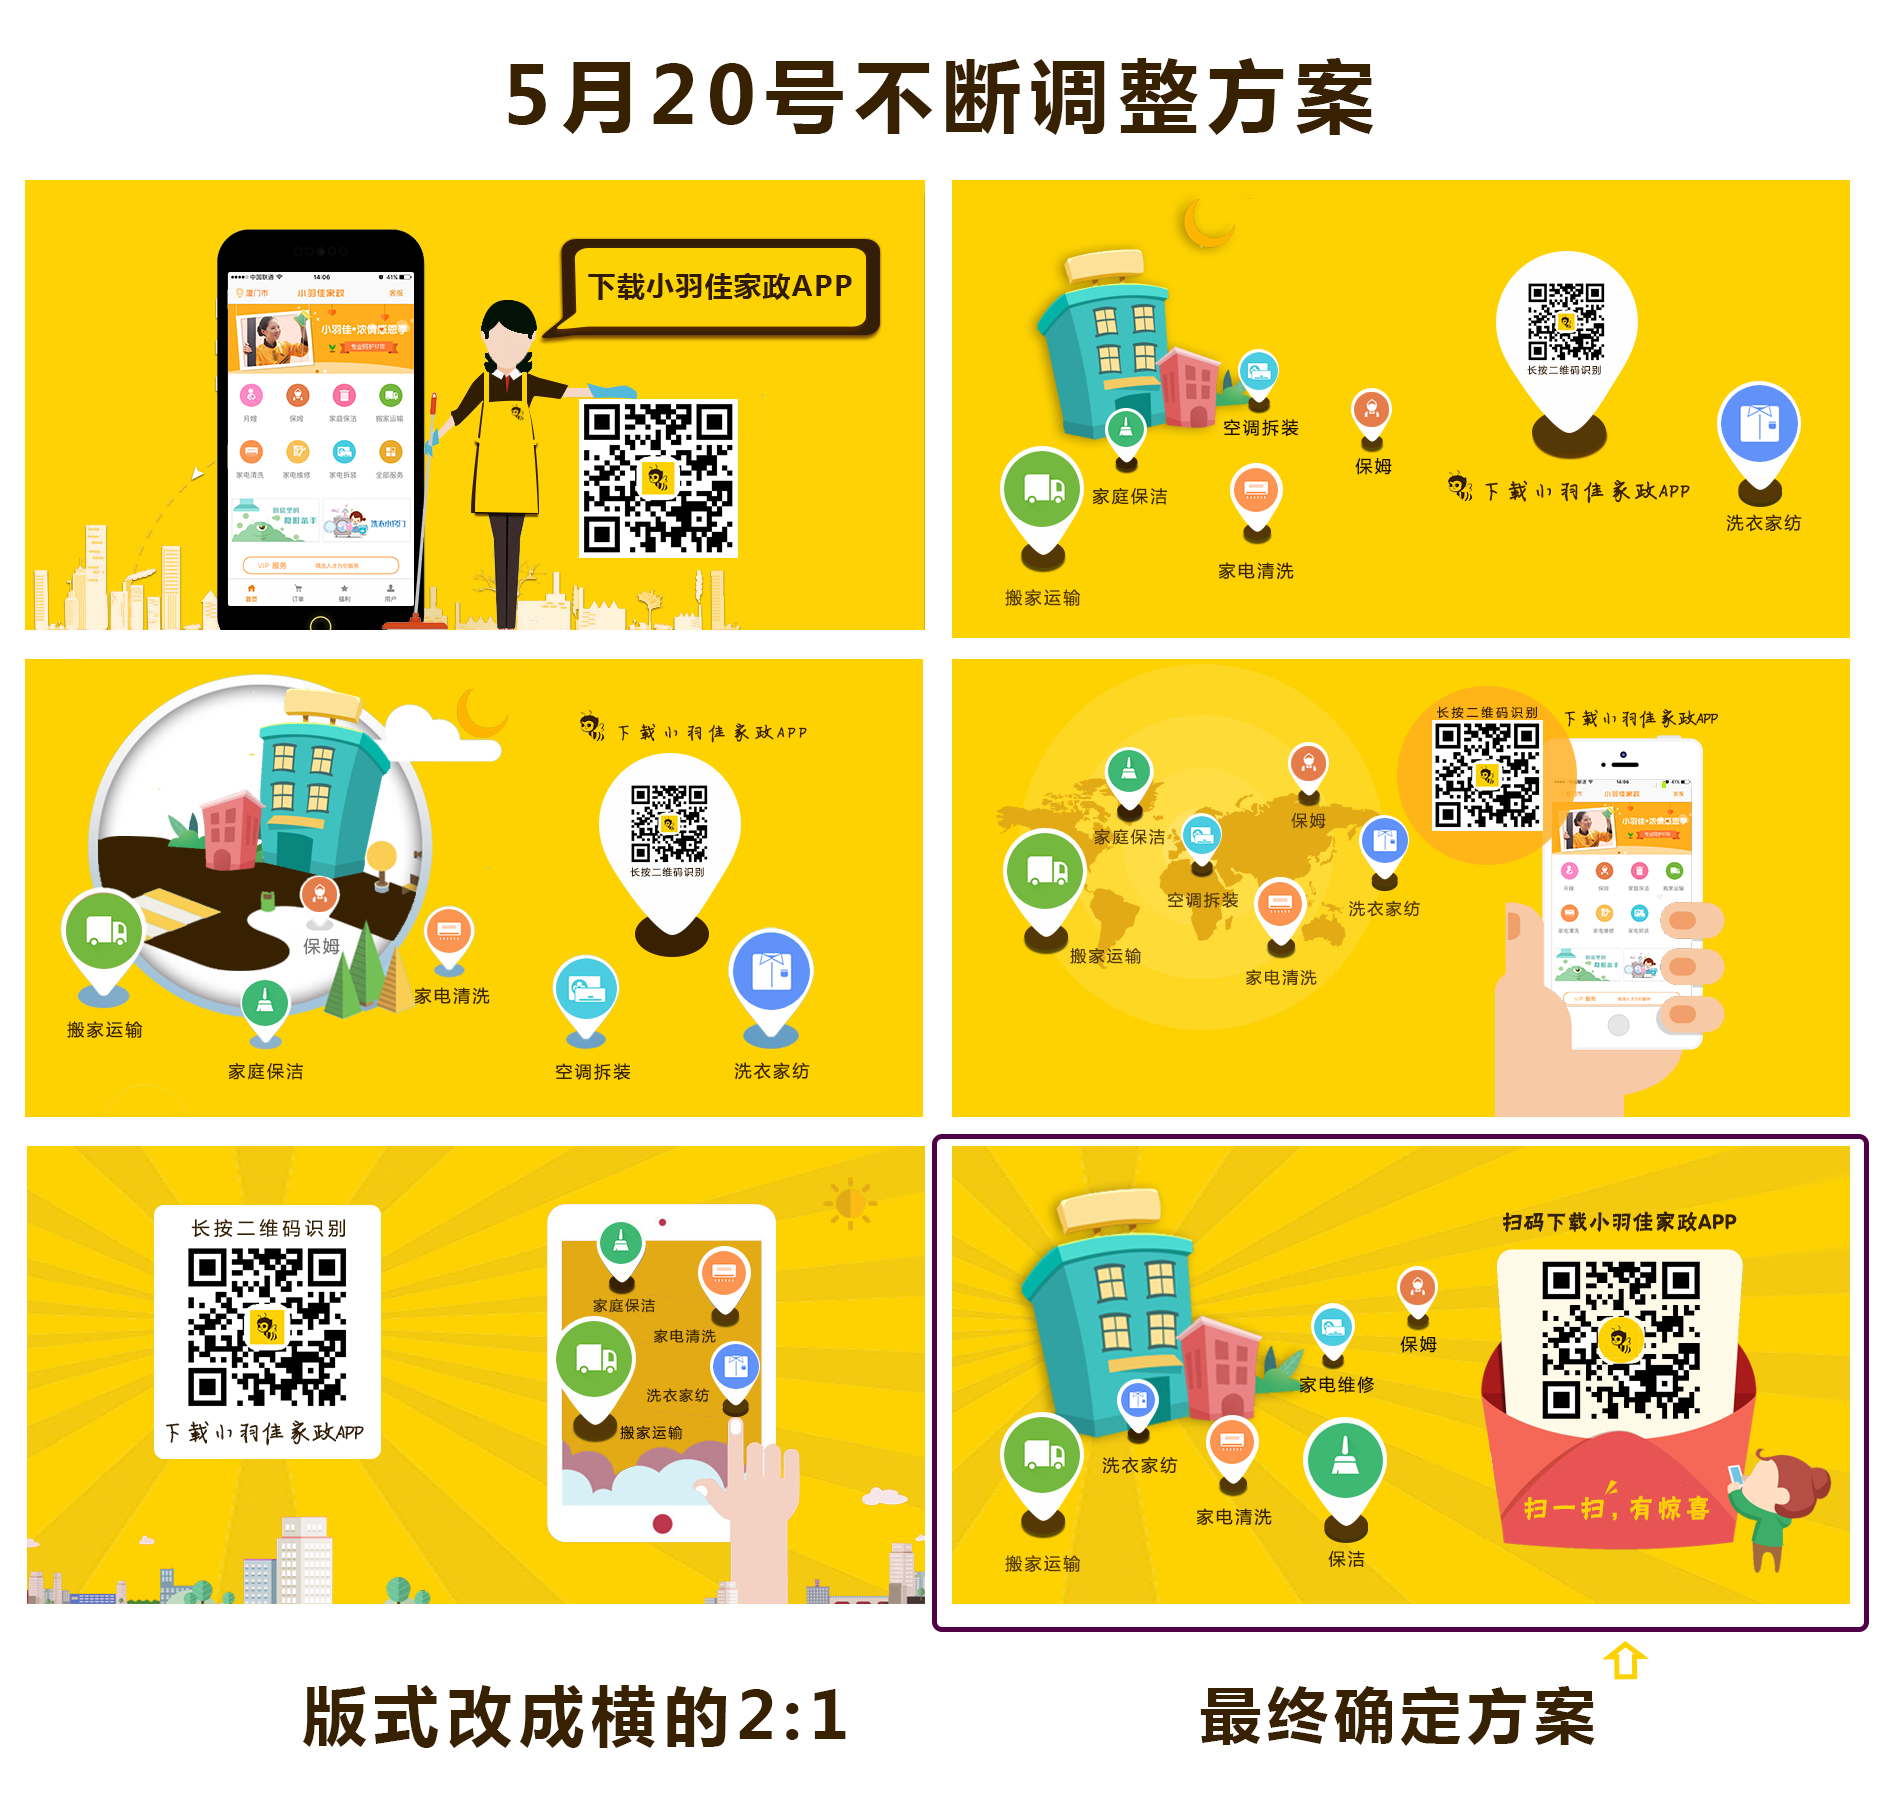 黑黄色二维码矢量店铺宣传中文微信公众号二维码 - 模板 - Canva可画